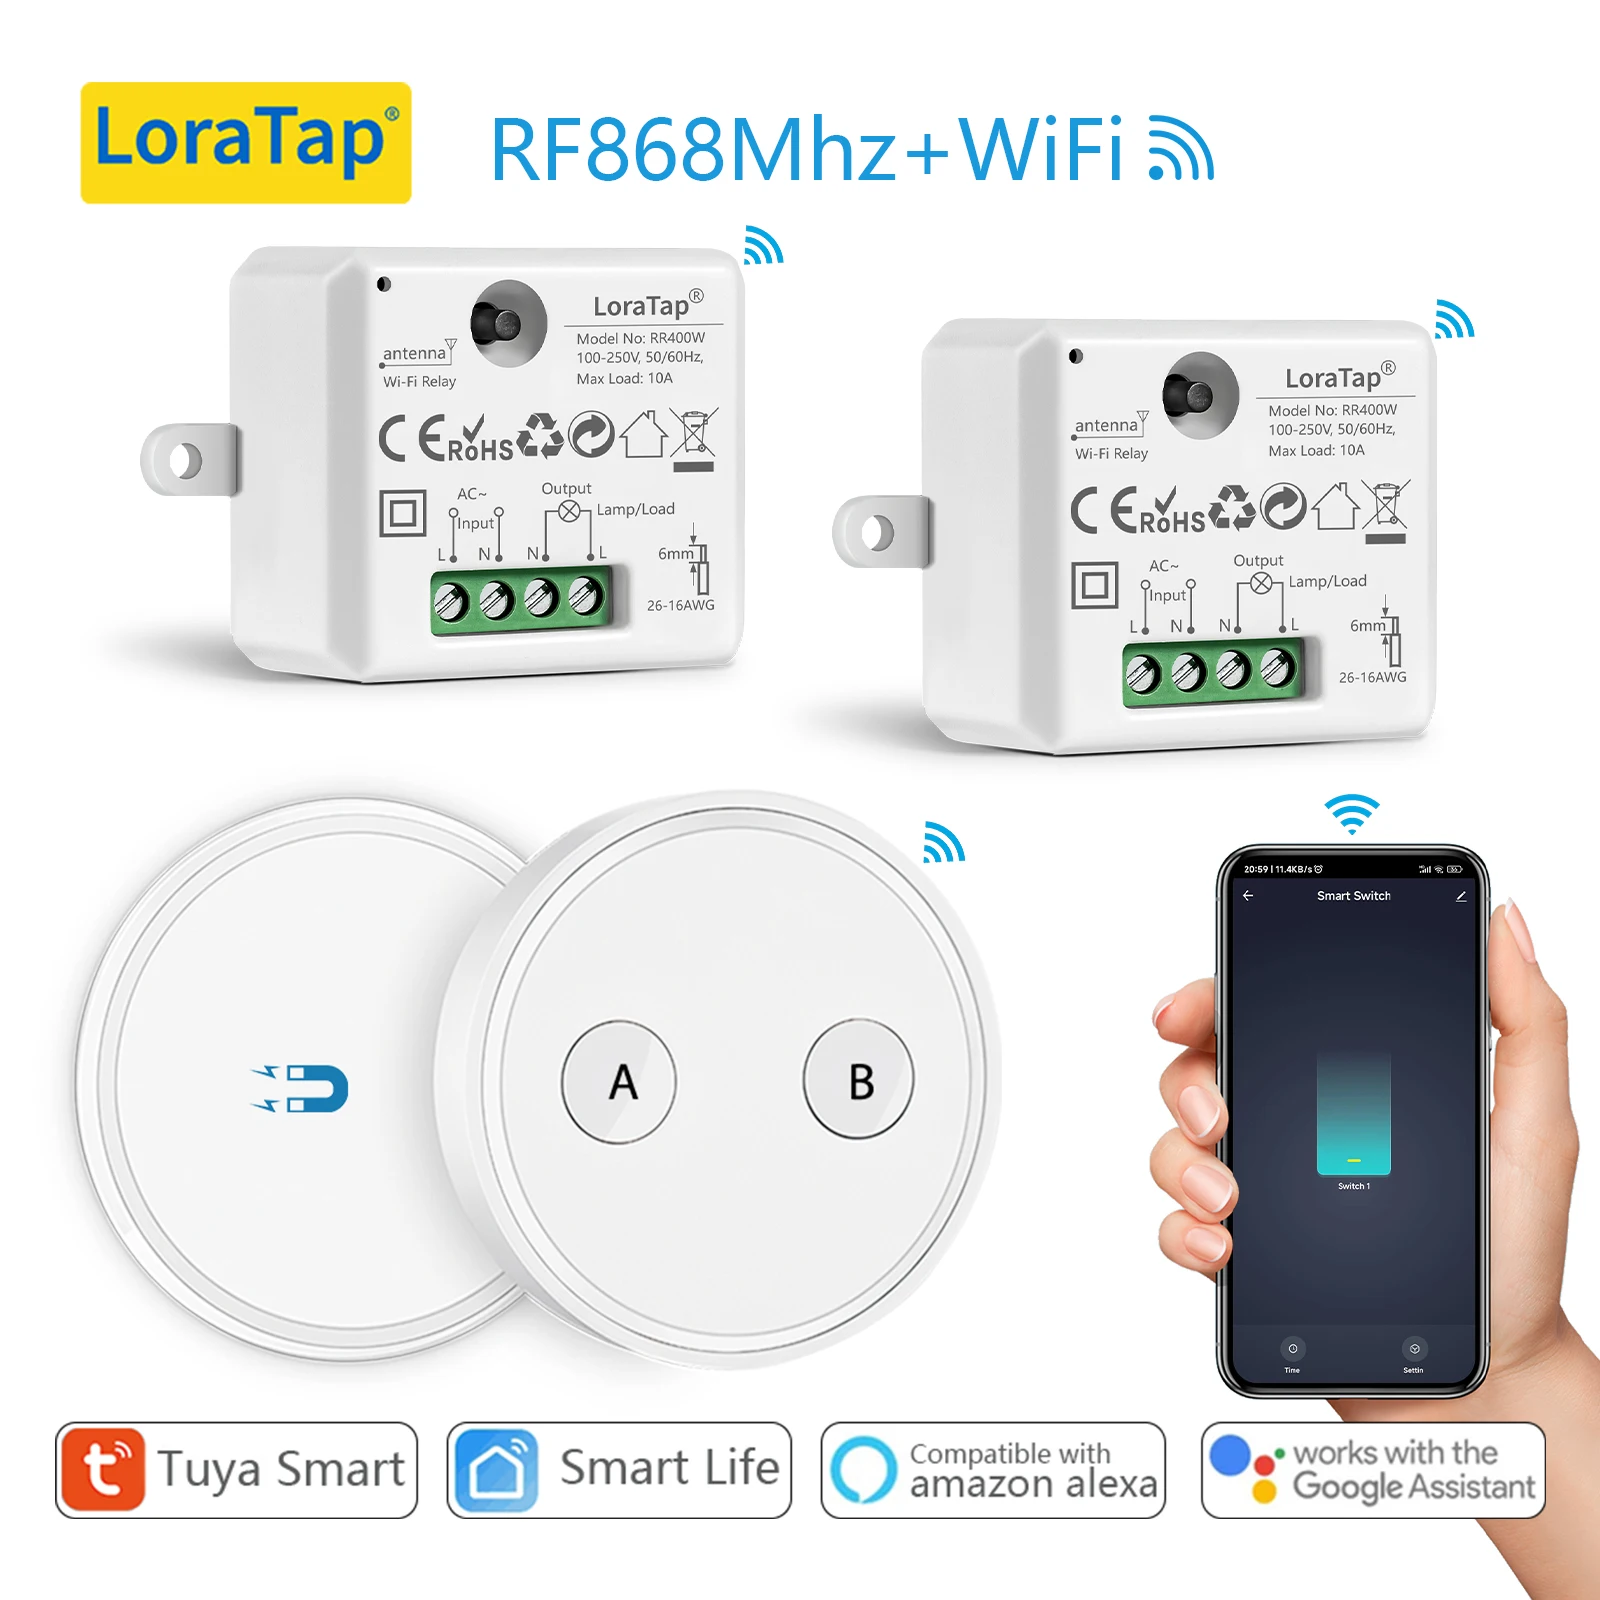 https://ae01.alicdn.com/kf/S36d79bf6f40a40c9bb984d2839e2ee44r/LoraTap-Tuya-WiFi-Switch-MINI-Relay-10A-with-Remote-RF-868Mhz-up-to-200m-Smart-Life.jpg